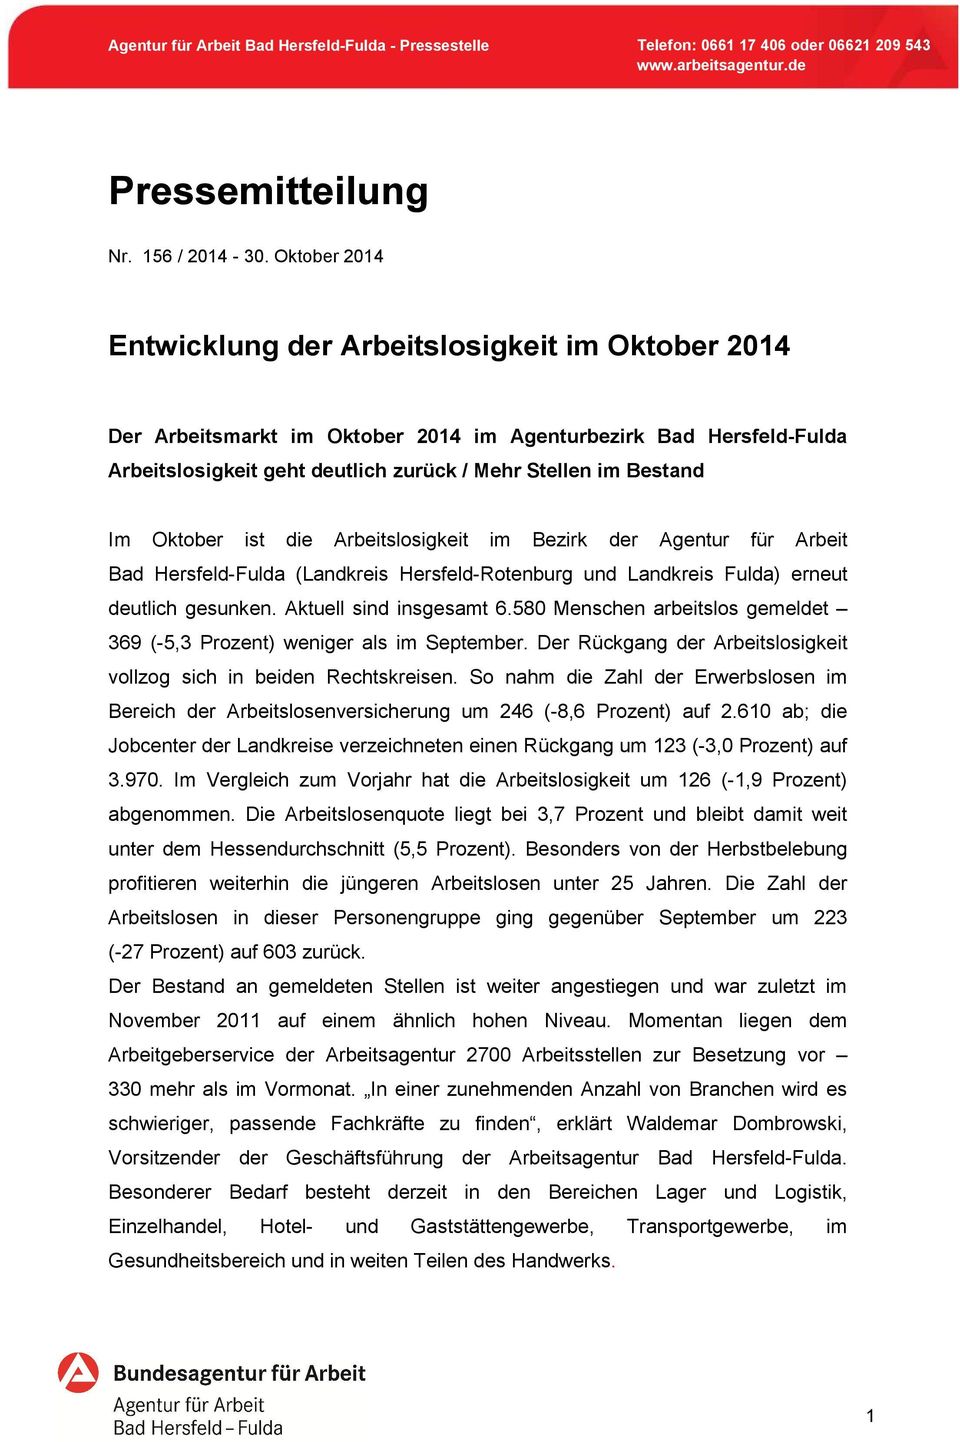 Oktober ist die Arbeitslosigkeit im Bezirk der Agentur für Arbeit Bad Hersfeld-Fulda (Landkreis Hersfeld-Rotenburg und Landkreis Fulda) erneut deutlich gesunken. Aktuell sind insgesamt 6.